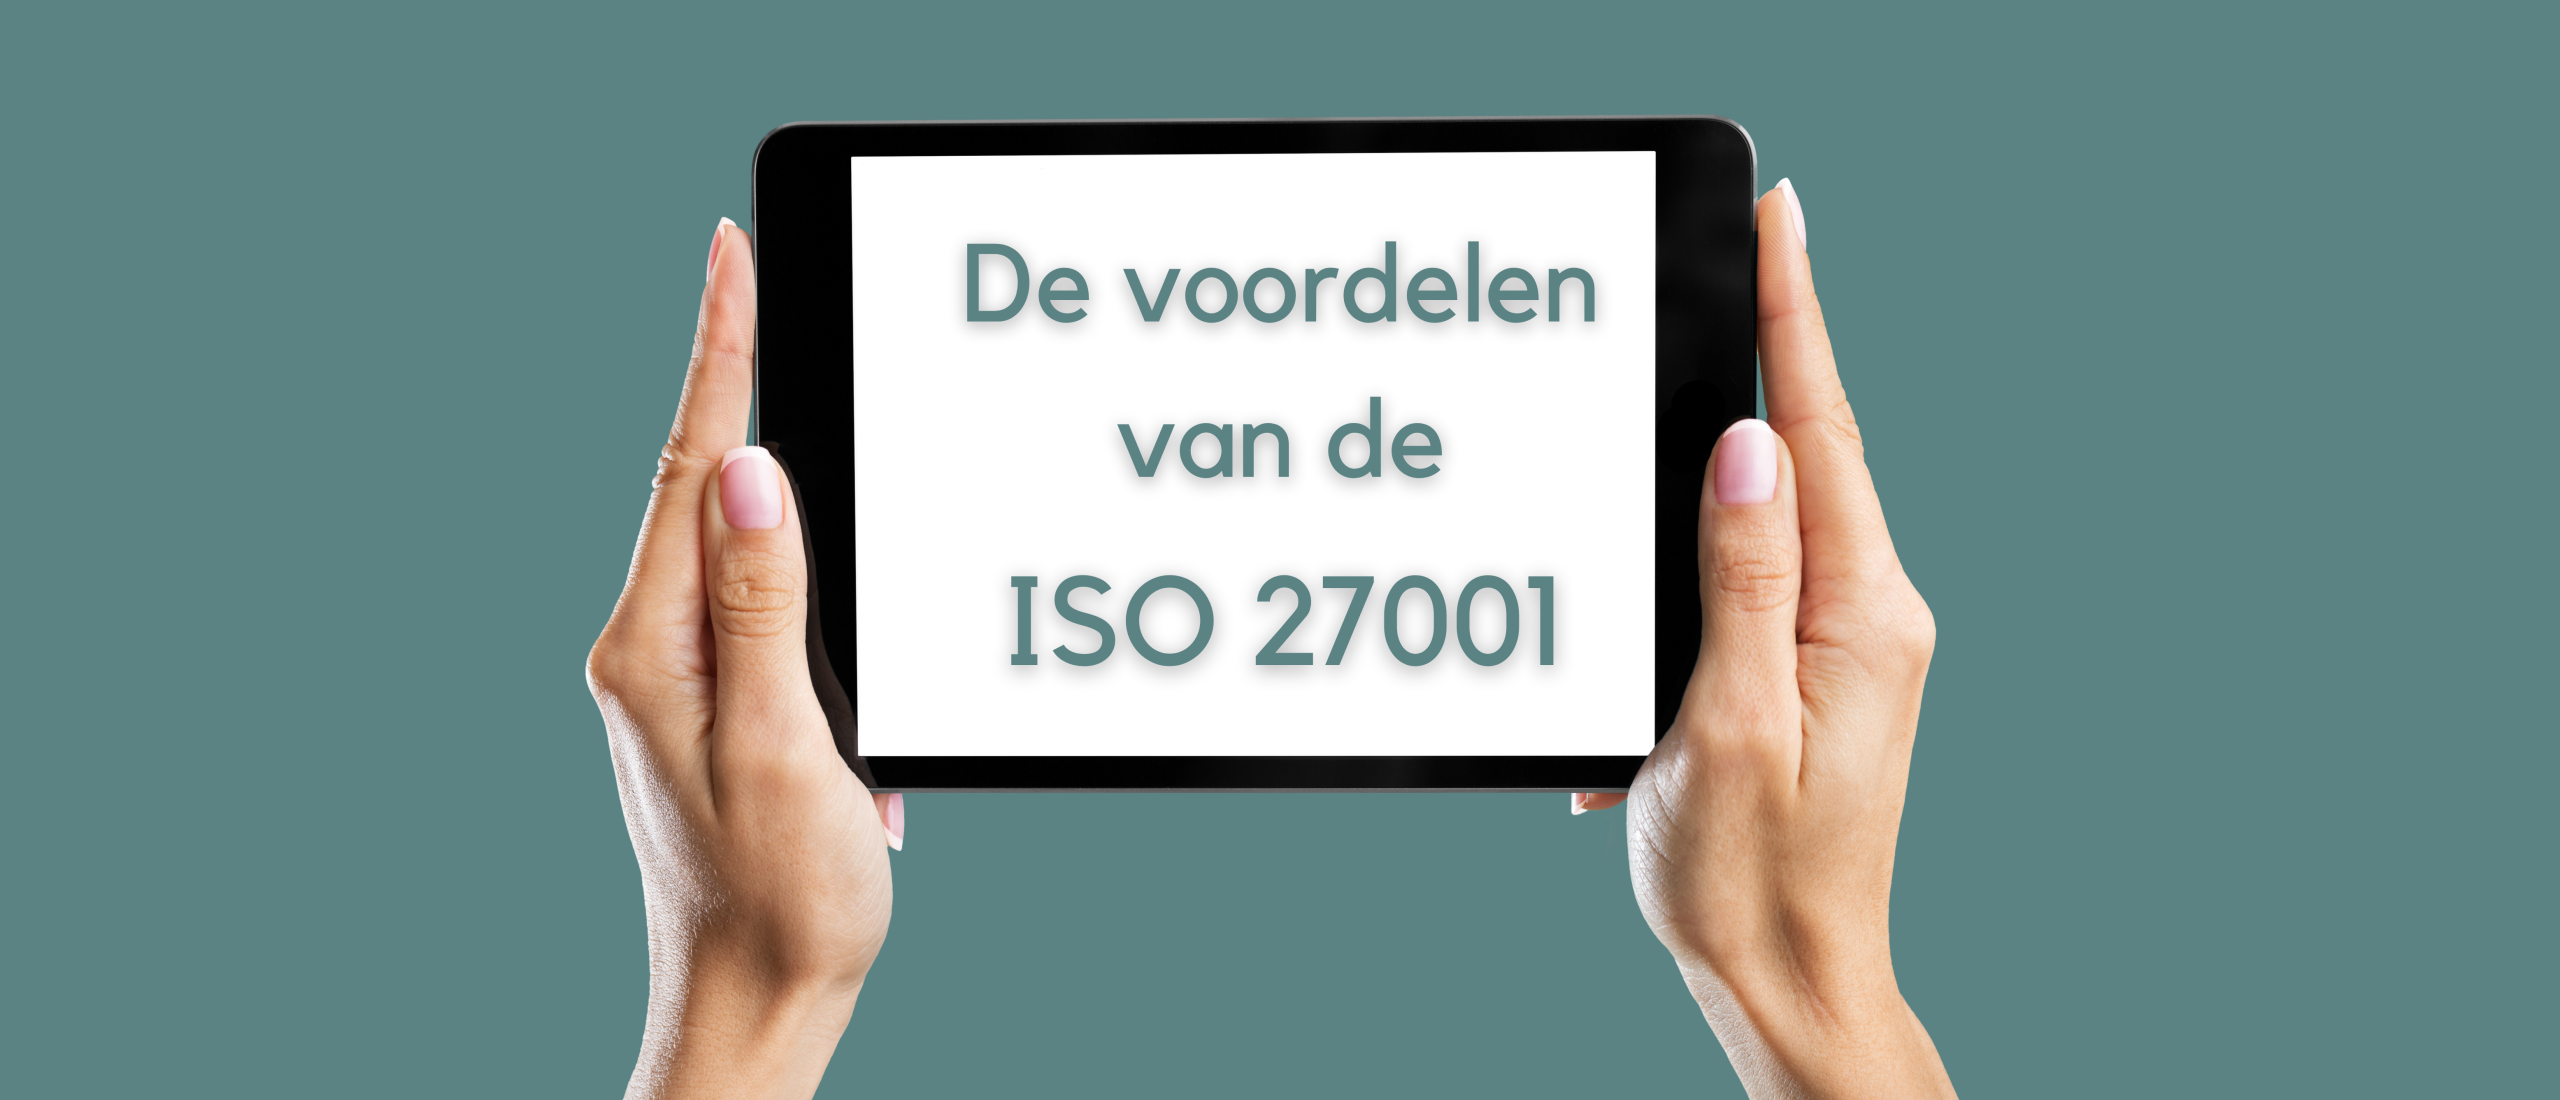 De voordelen van ISO 27001